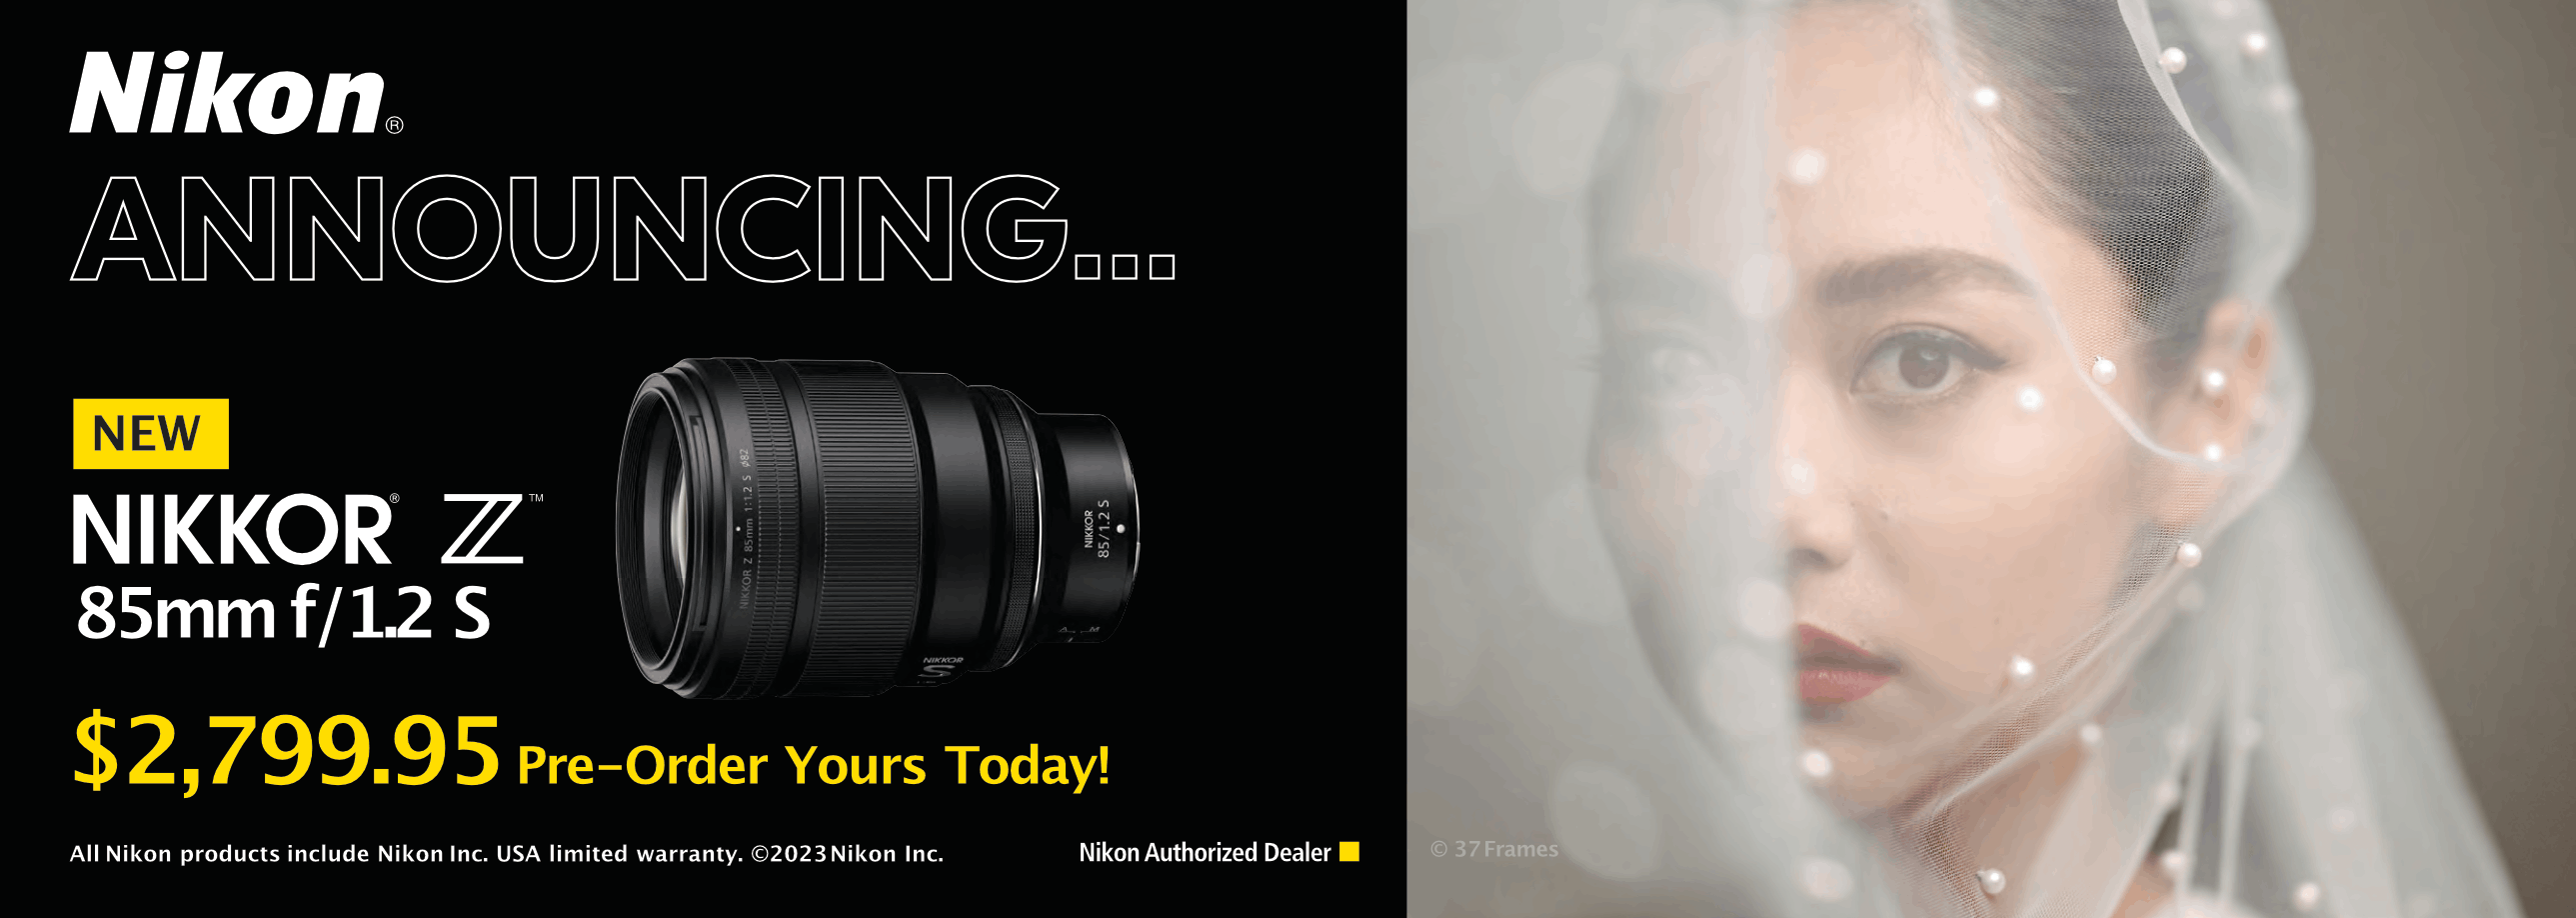 Nikon Amazing New Z 85mm f/1.2 S